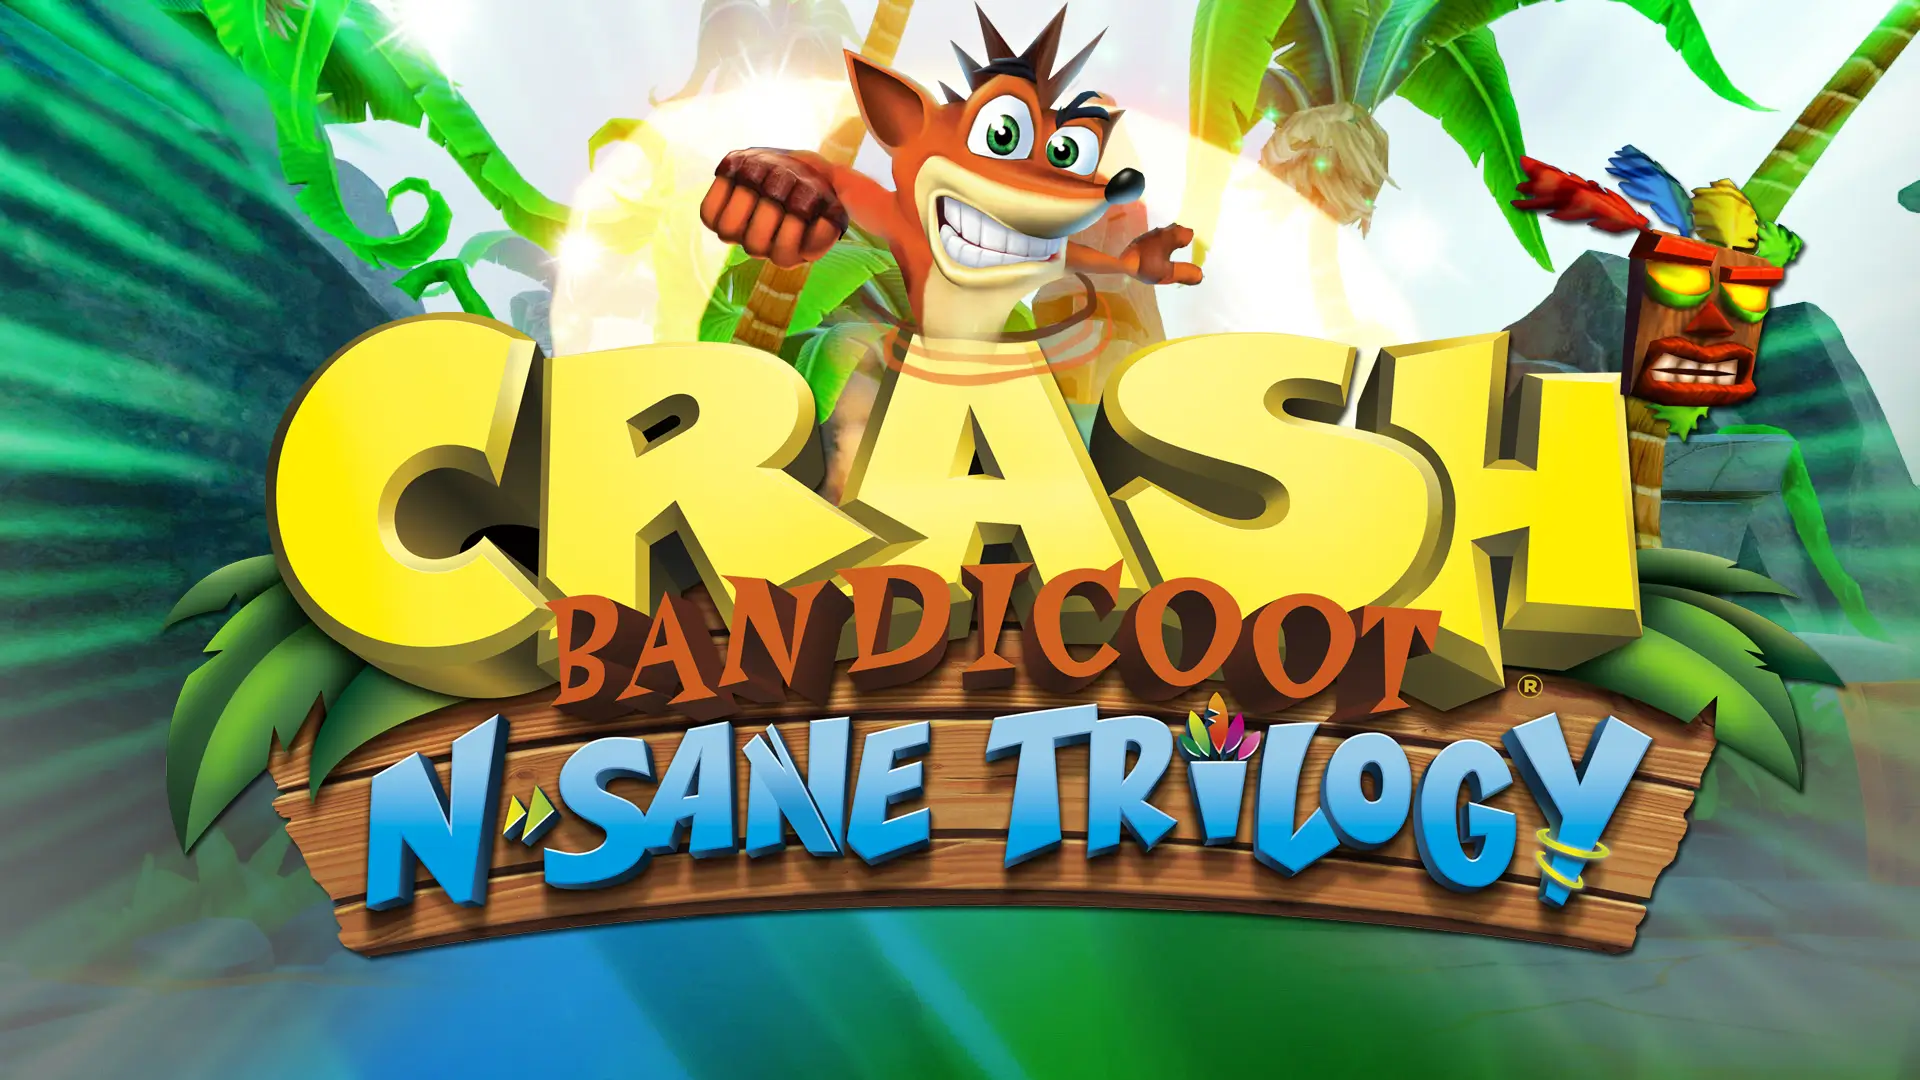 Crash Bandicoot N. Sane Trilogy Xbox Game Pass next month image 1